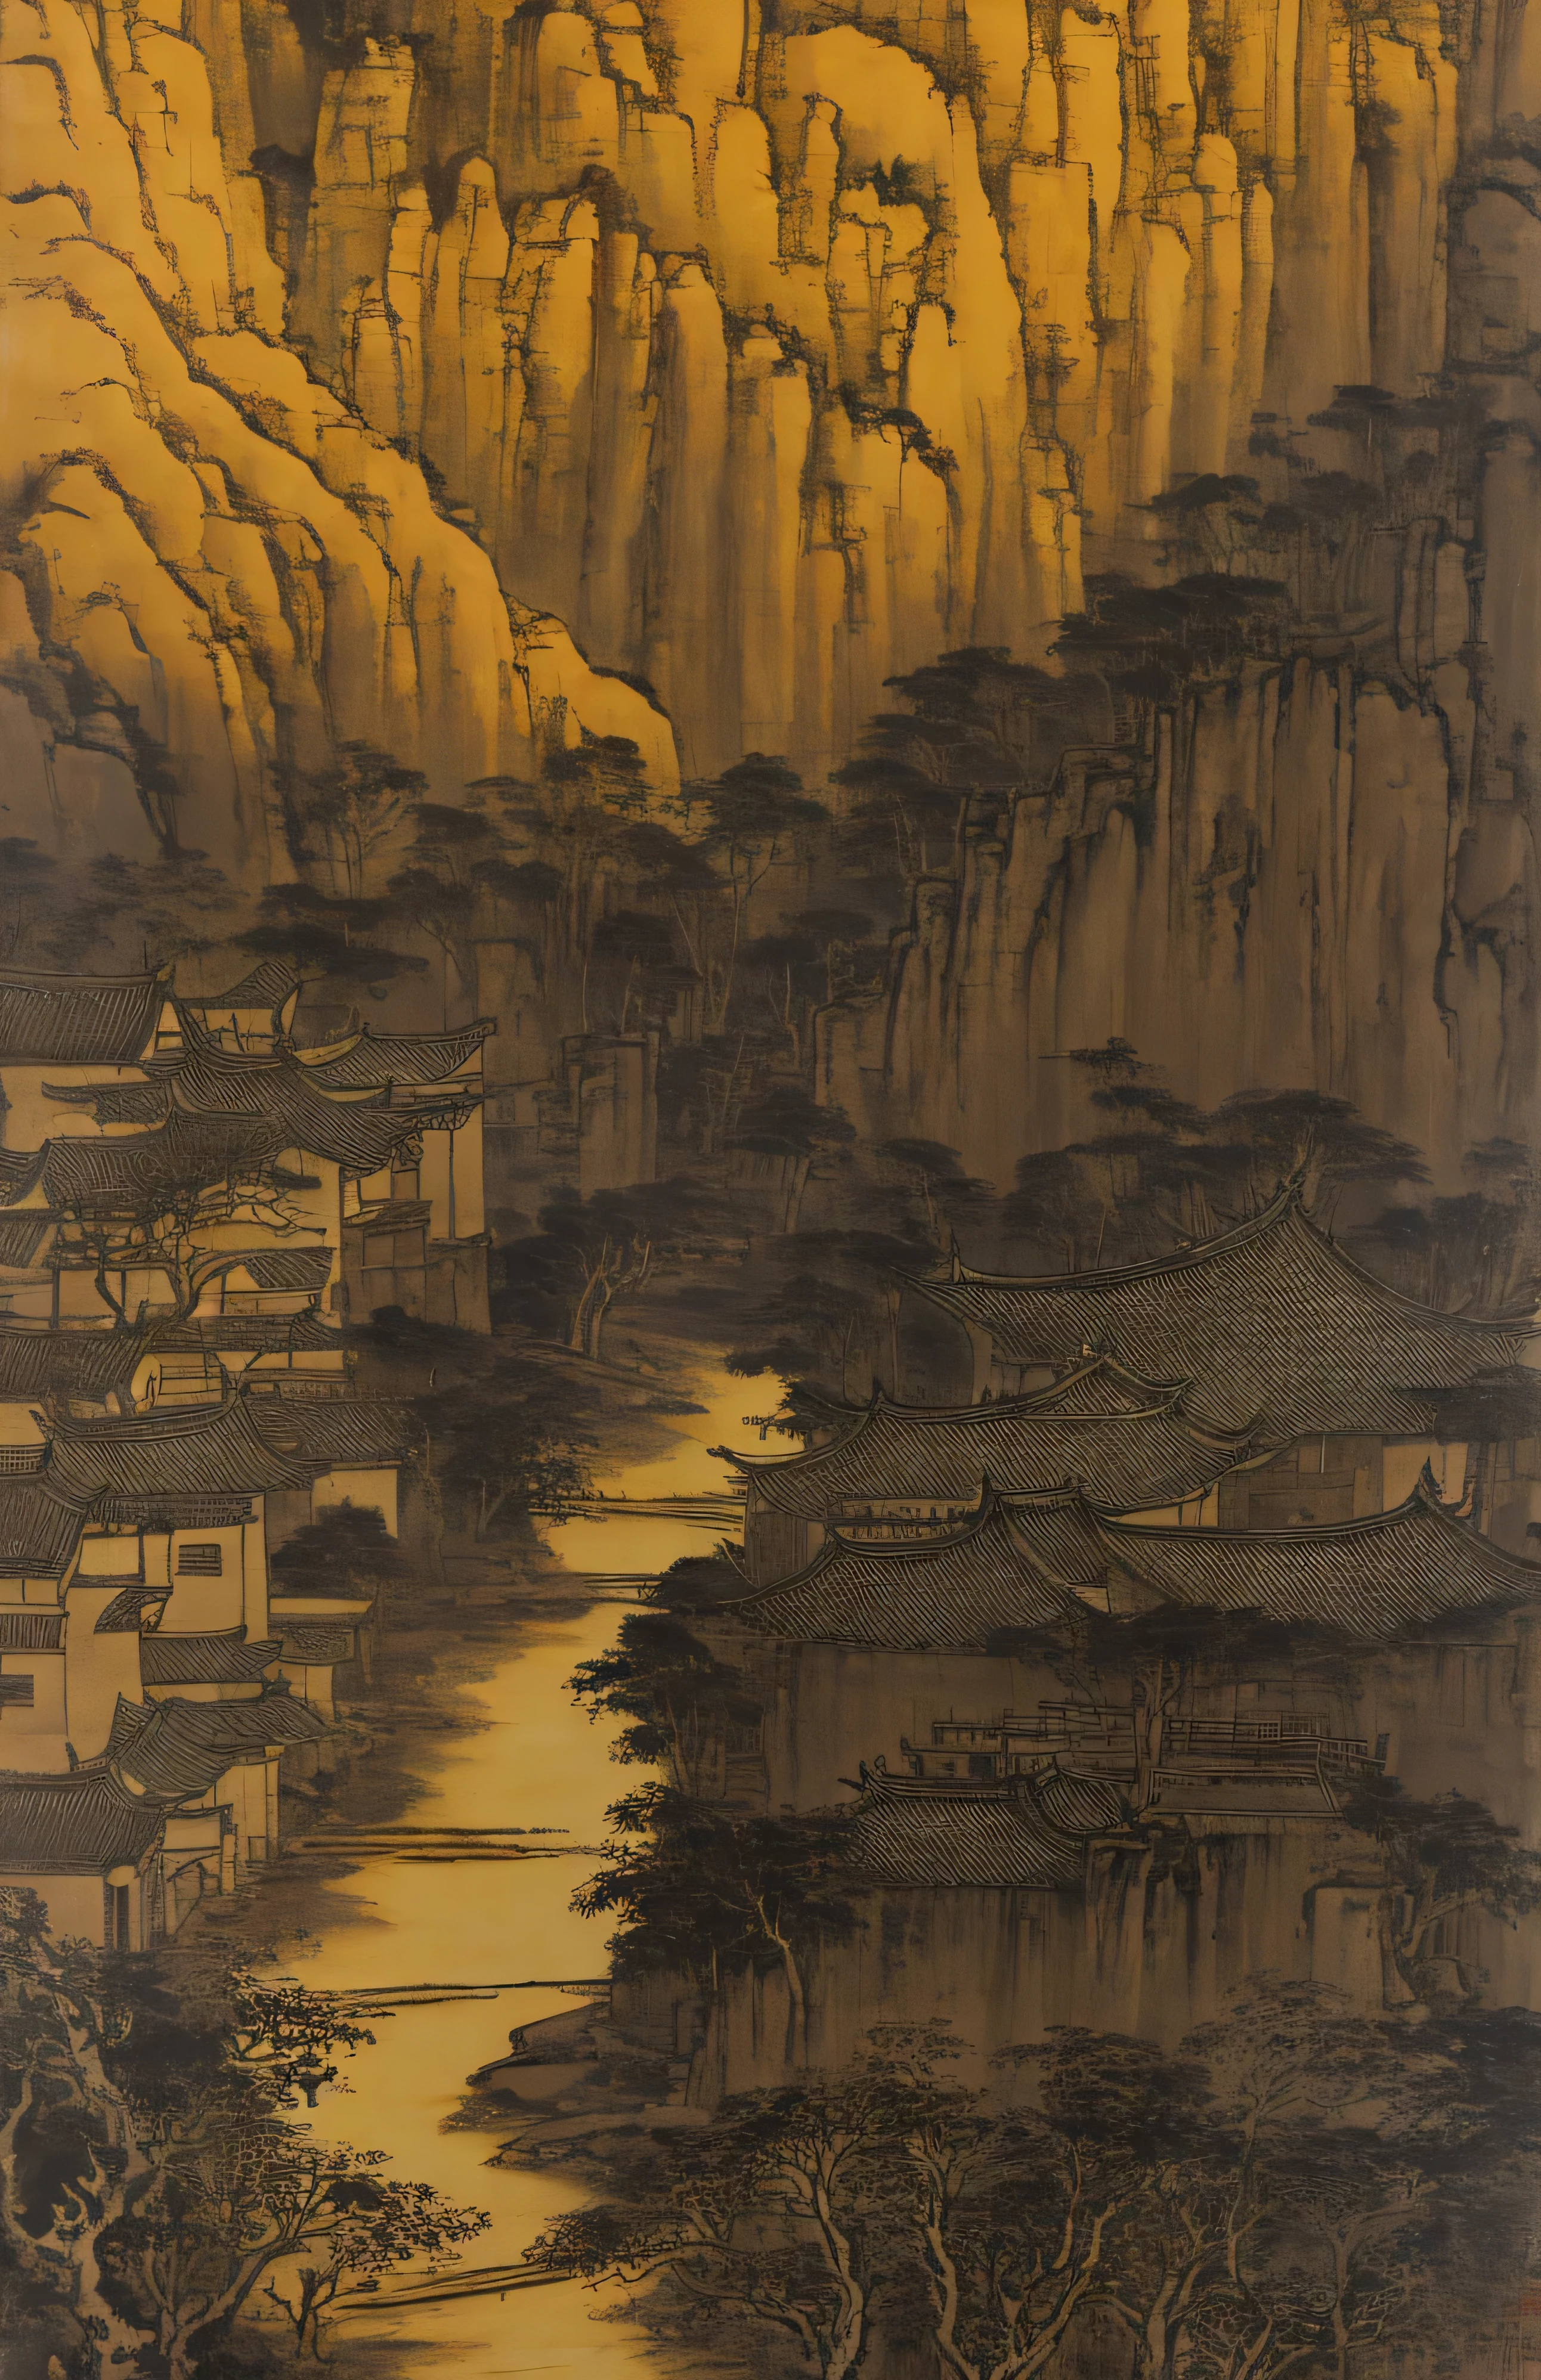 小川を見下ろす小さな村, このスタイルは古代中国の芸術に影響を受けている, 薄い黄色と薄い黒, 中国絵画, 水墨画, シャンレンにあります, シュー・ウェイ, シータオ, 有機建築, ハイキング, 素朴な自然主義